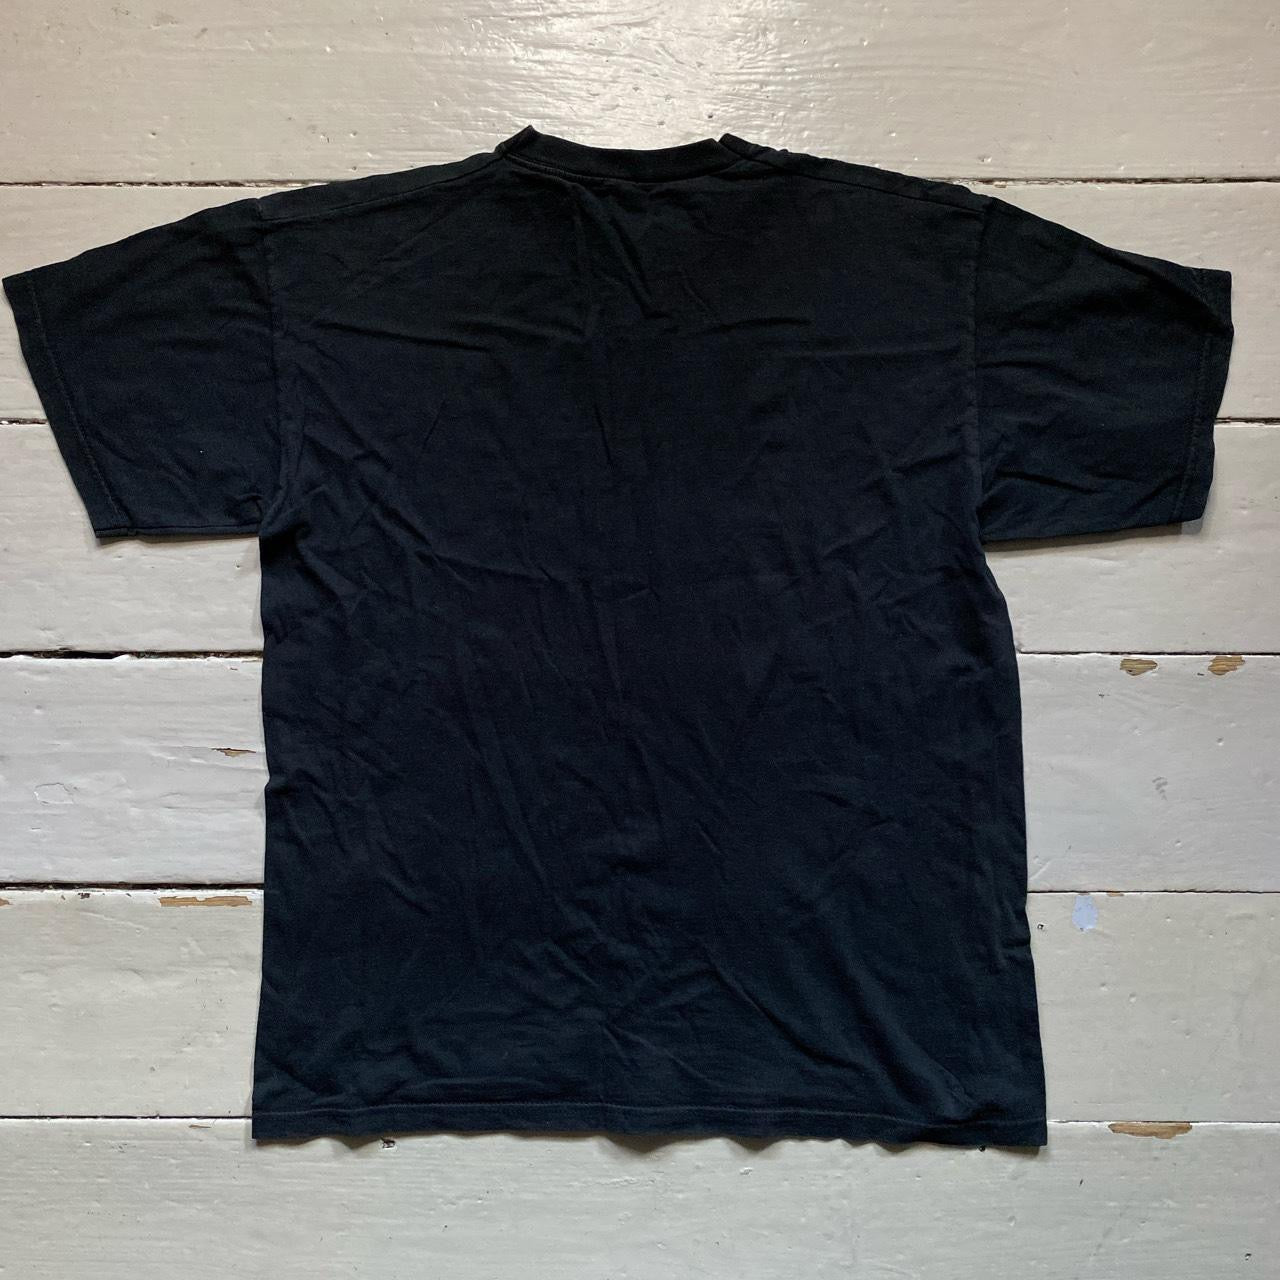 Von Dutch Black T Shirt (Medium)